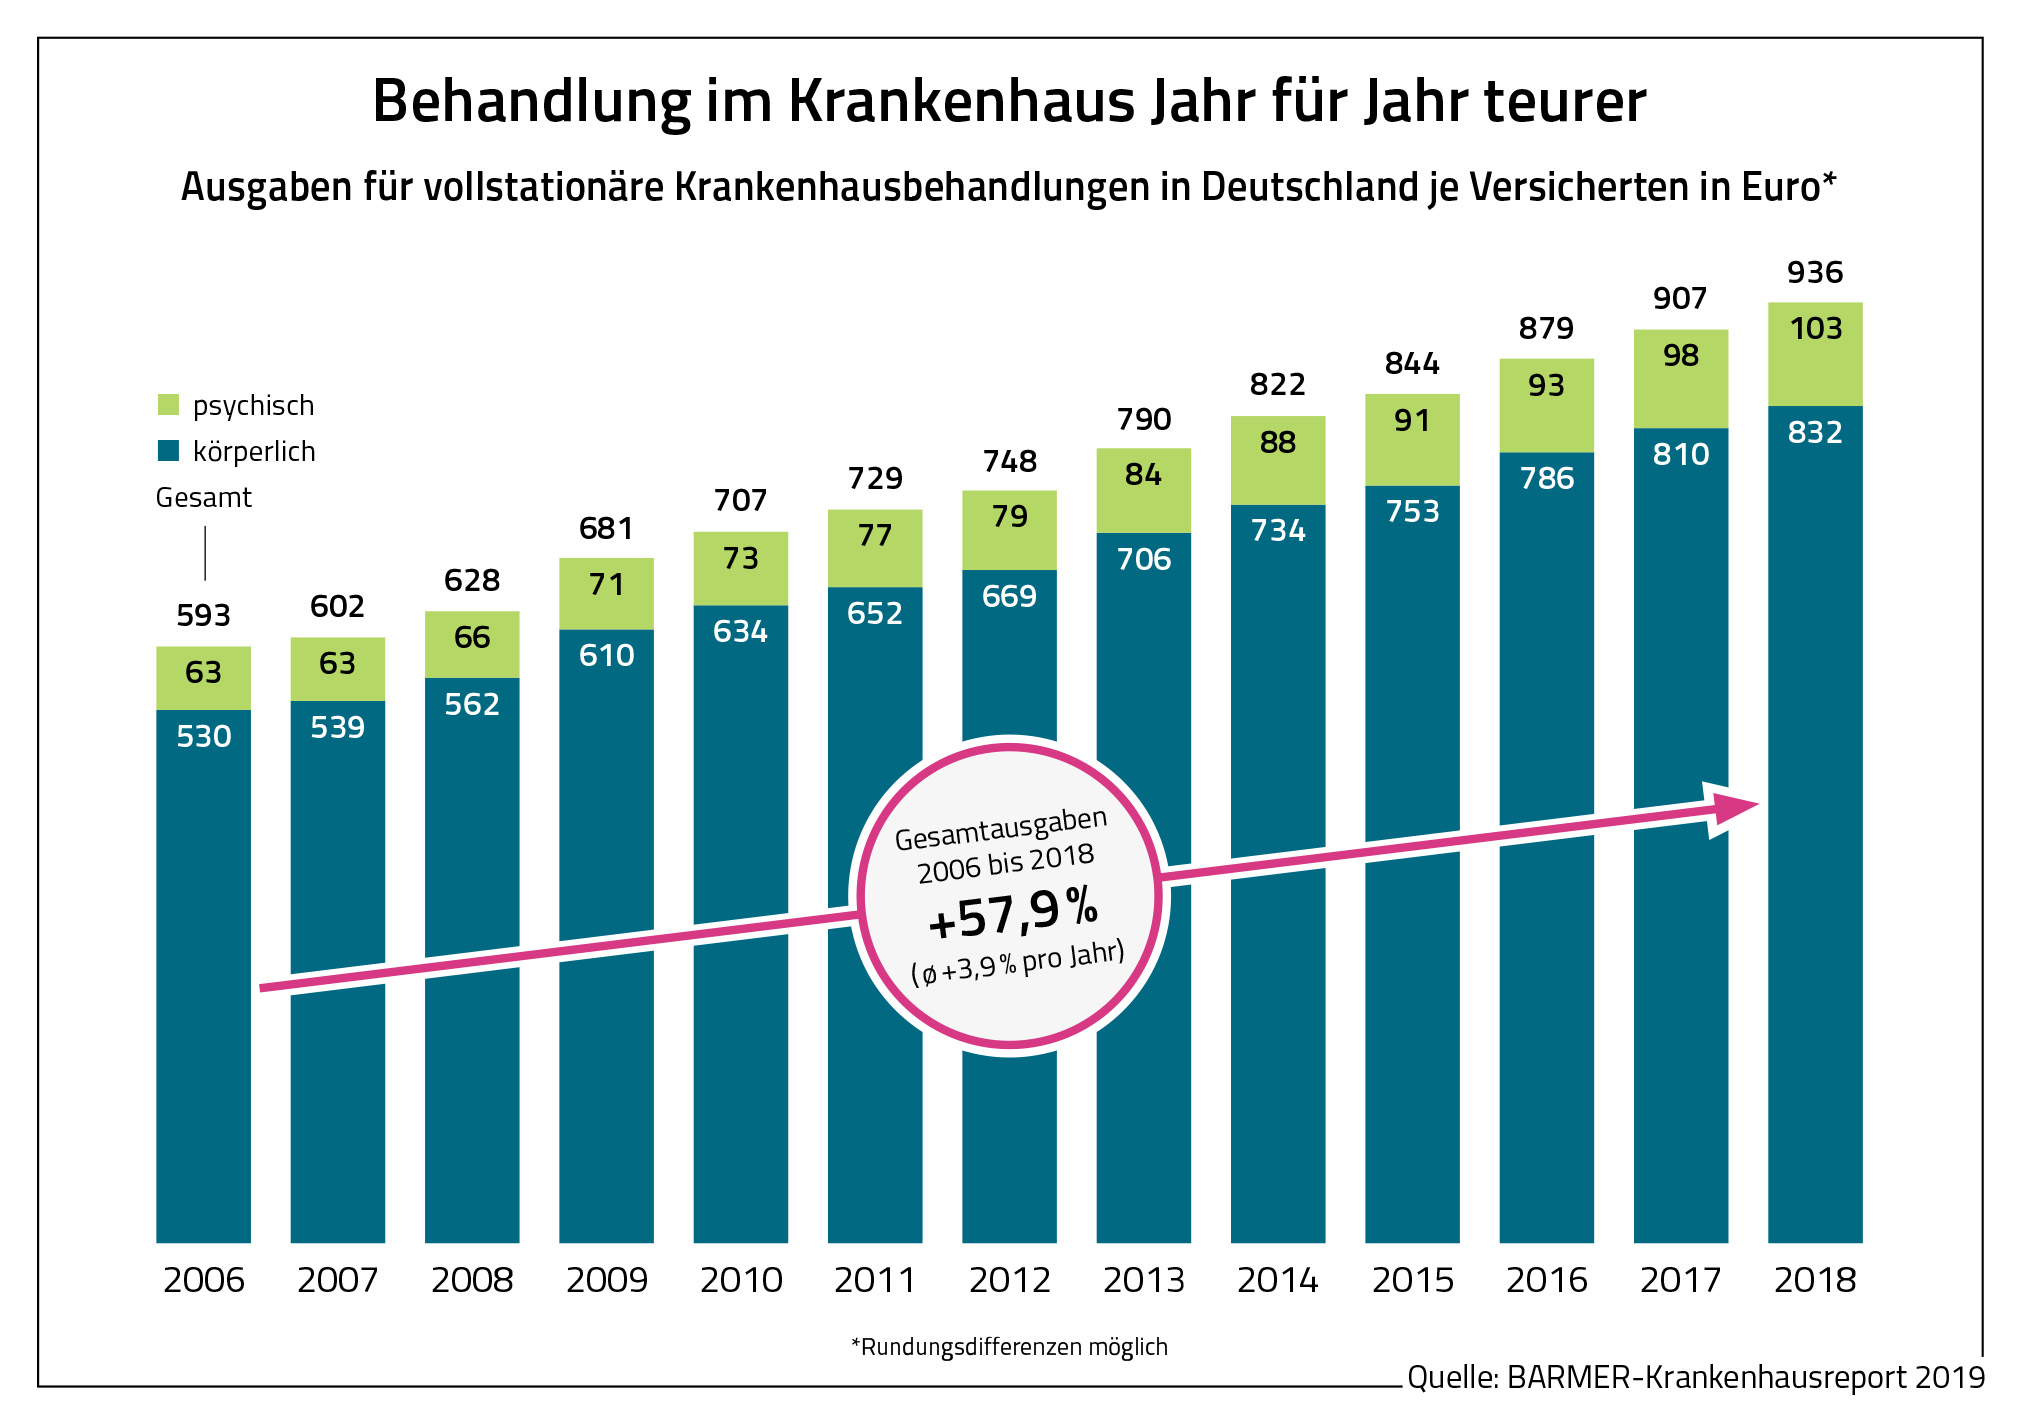 Die Grafik zeigt, dass Behandlungen im Krankenhaus Jahr für Jahr teurer werden